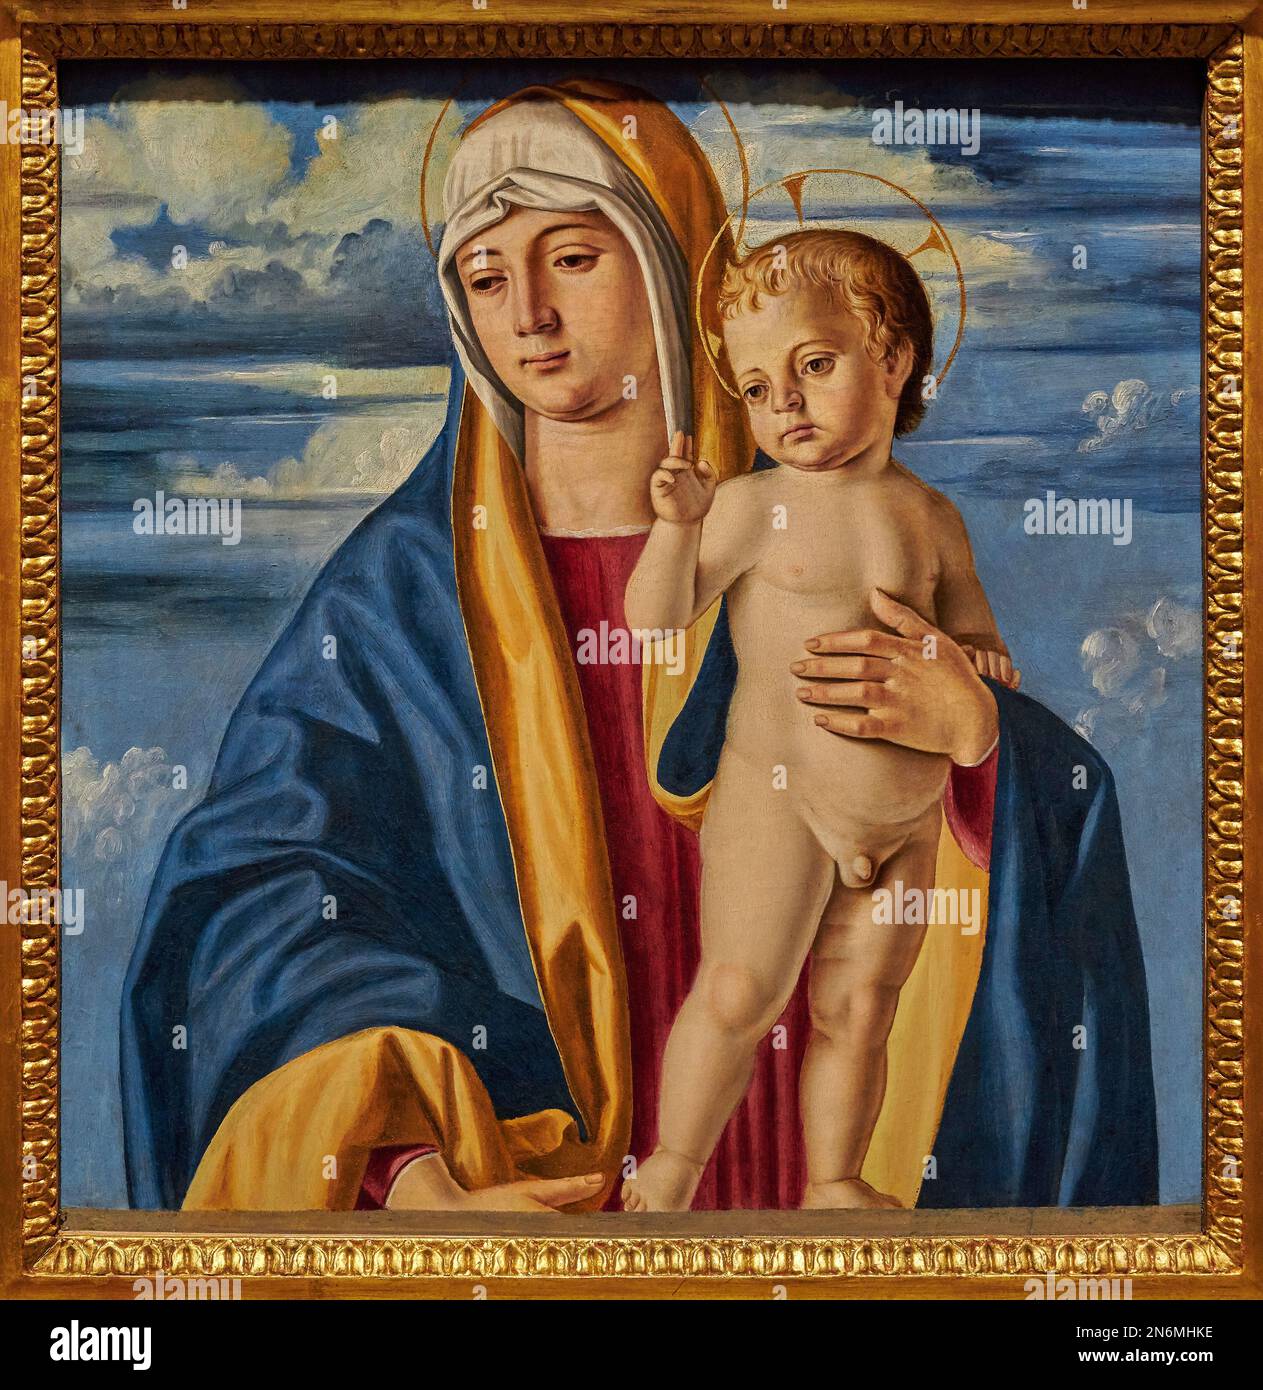 Madonna col Bambino   - tempera  su tavola - Cristoforo Caselli  - 1496  - Bergamo, Accademia Carrara Stock Photo